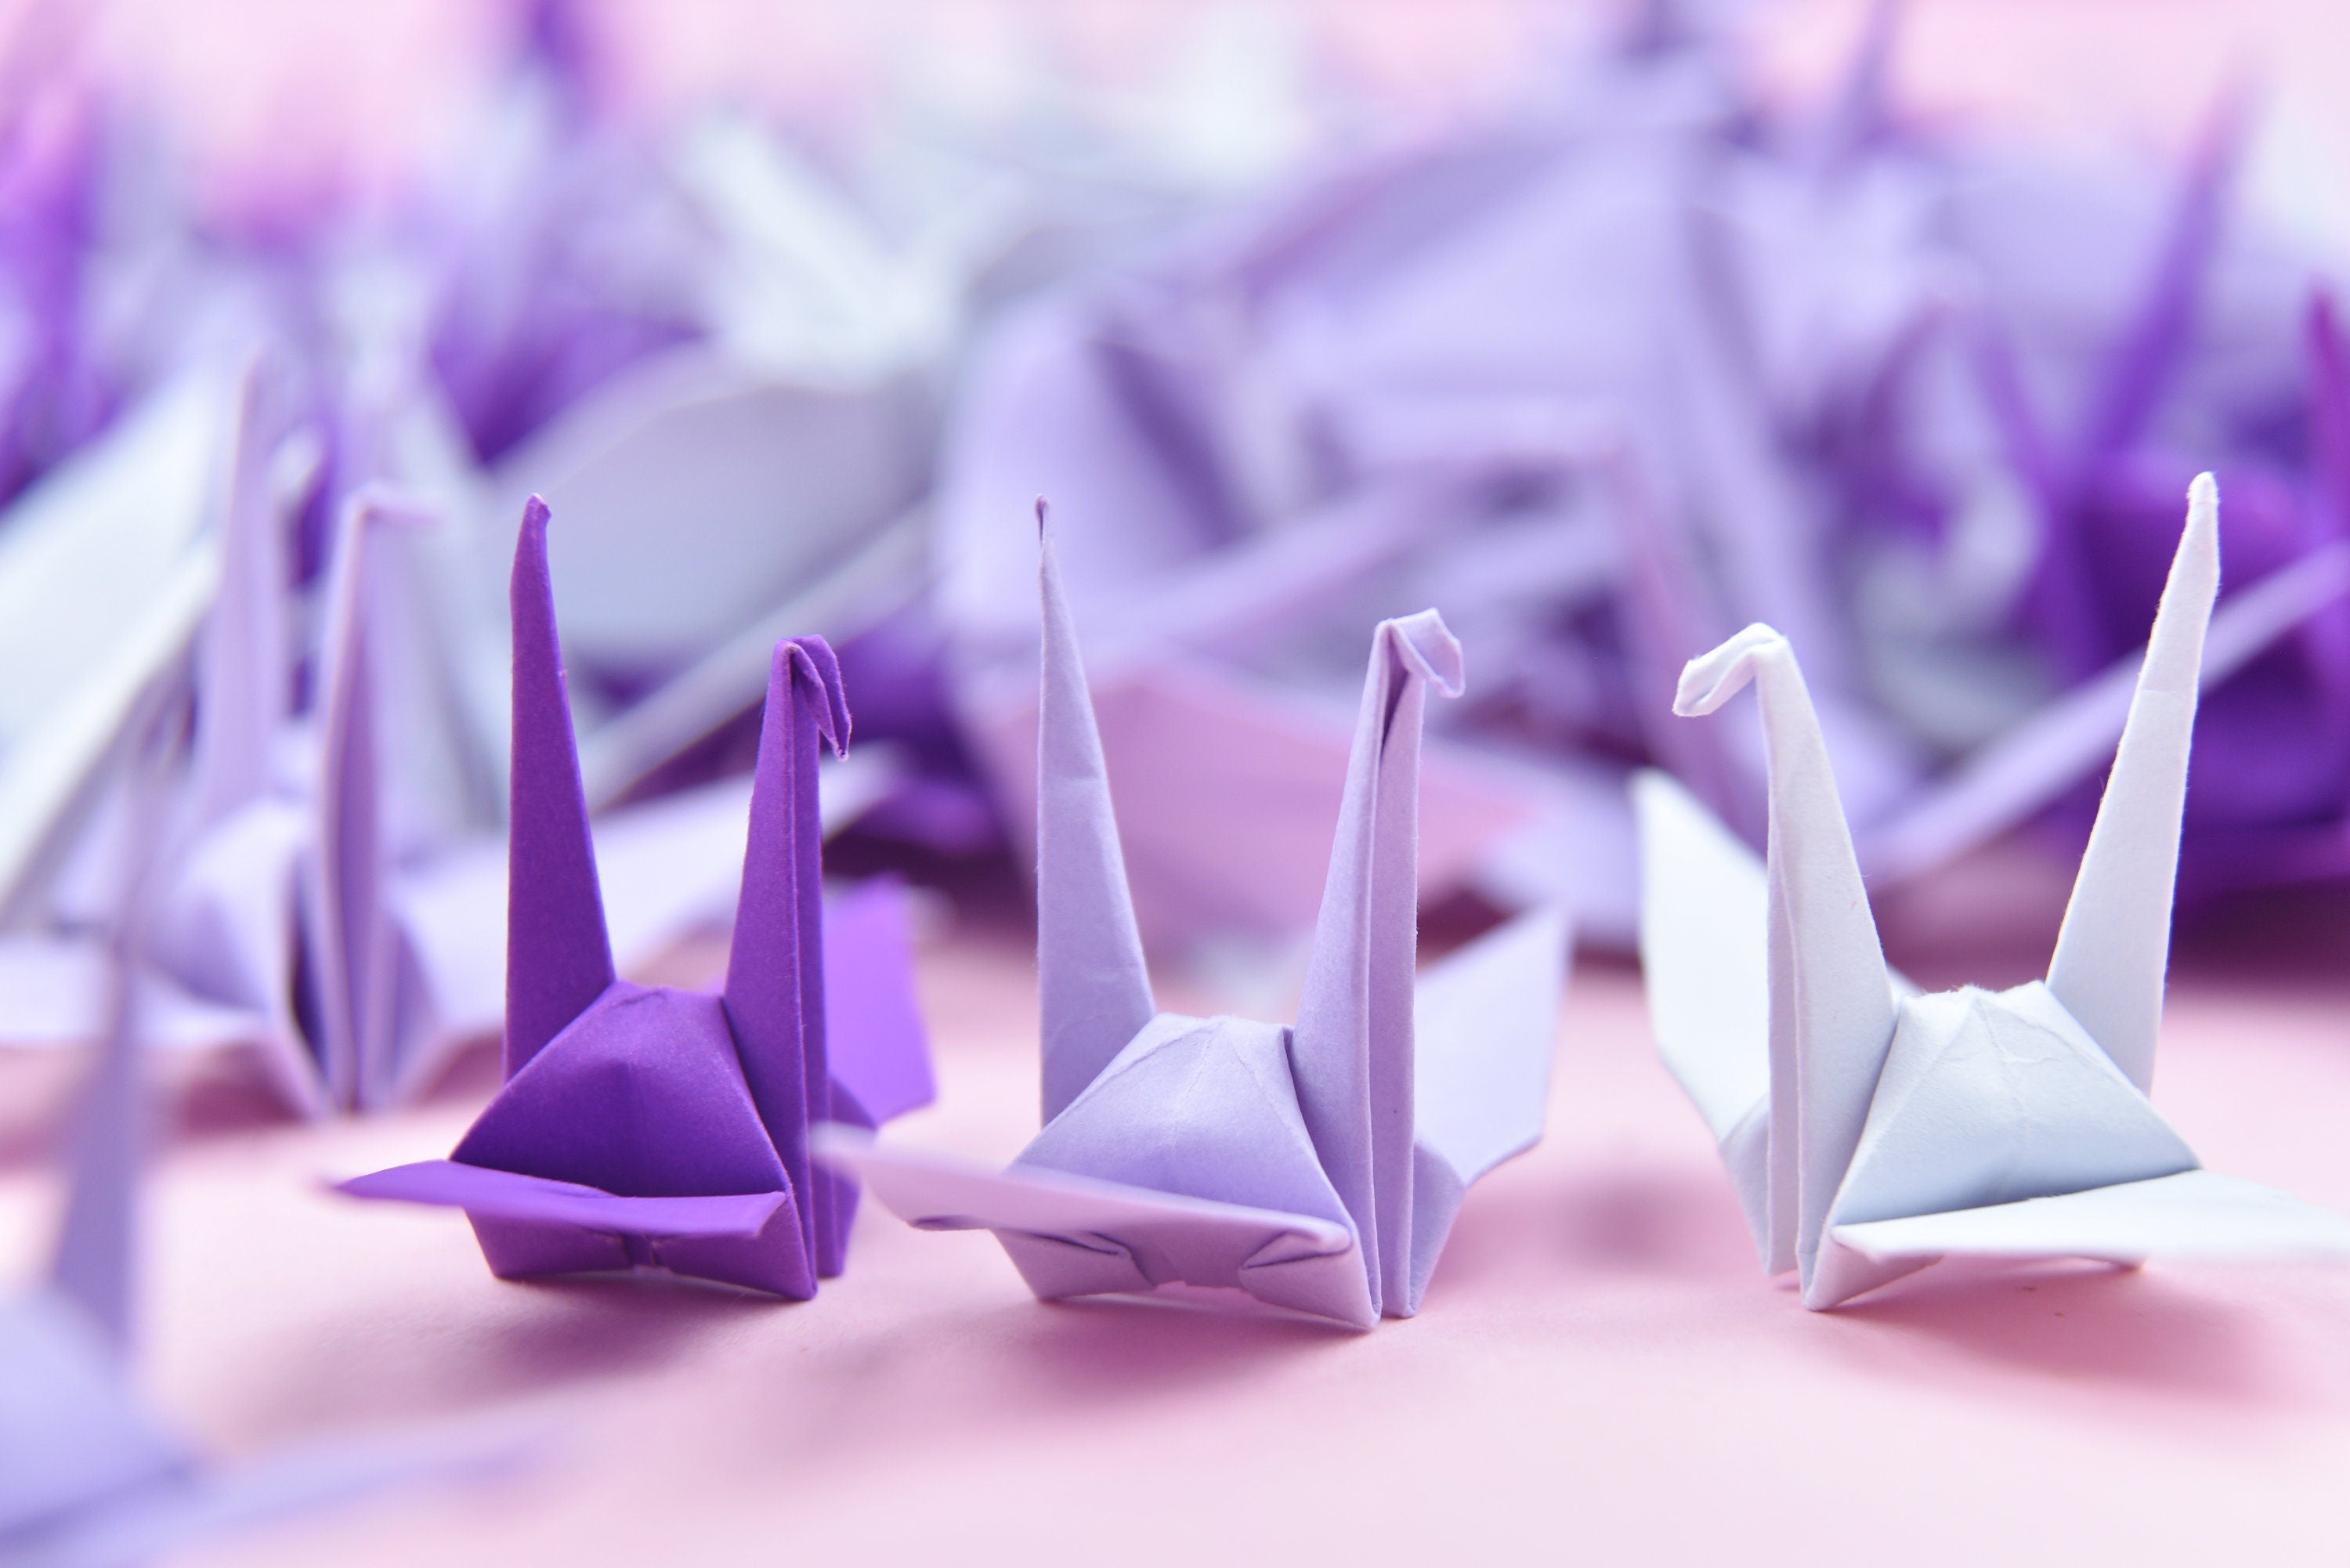 1000 gru di carta origami tono viola - 3x3 pollici - prefabbricata - gru origami per decorazioni di nozze, regalo di anniversario, San Valentino, sfondo